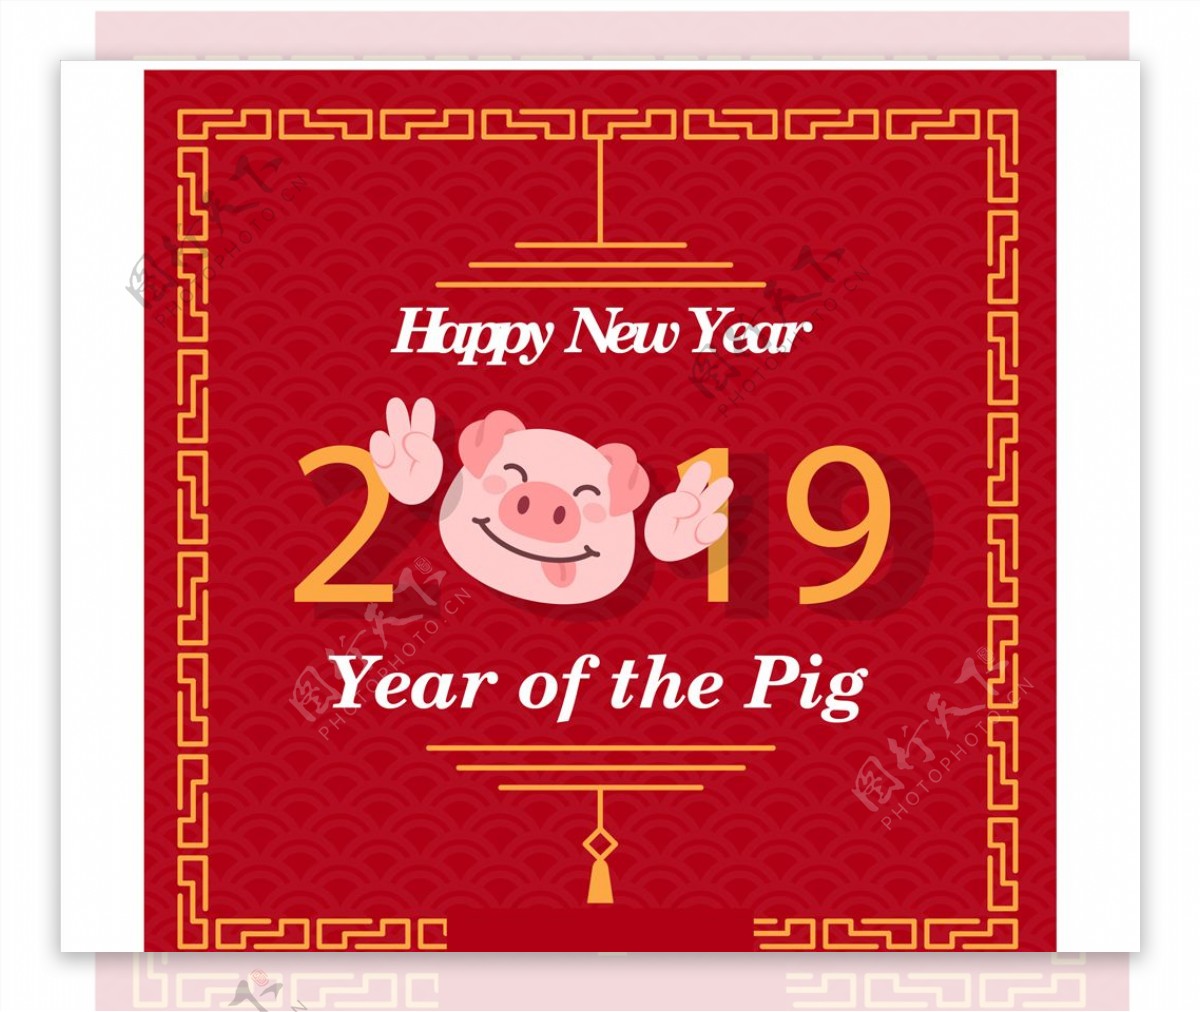 2019年可爱猪年贺卡矢量素材